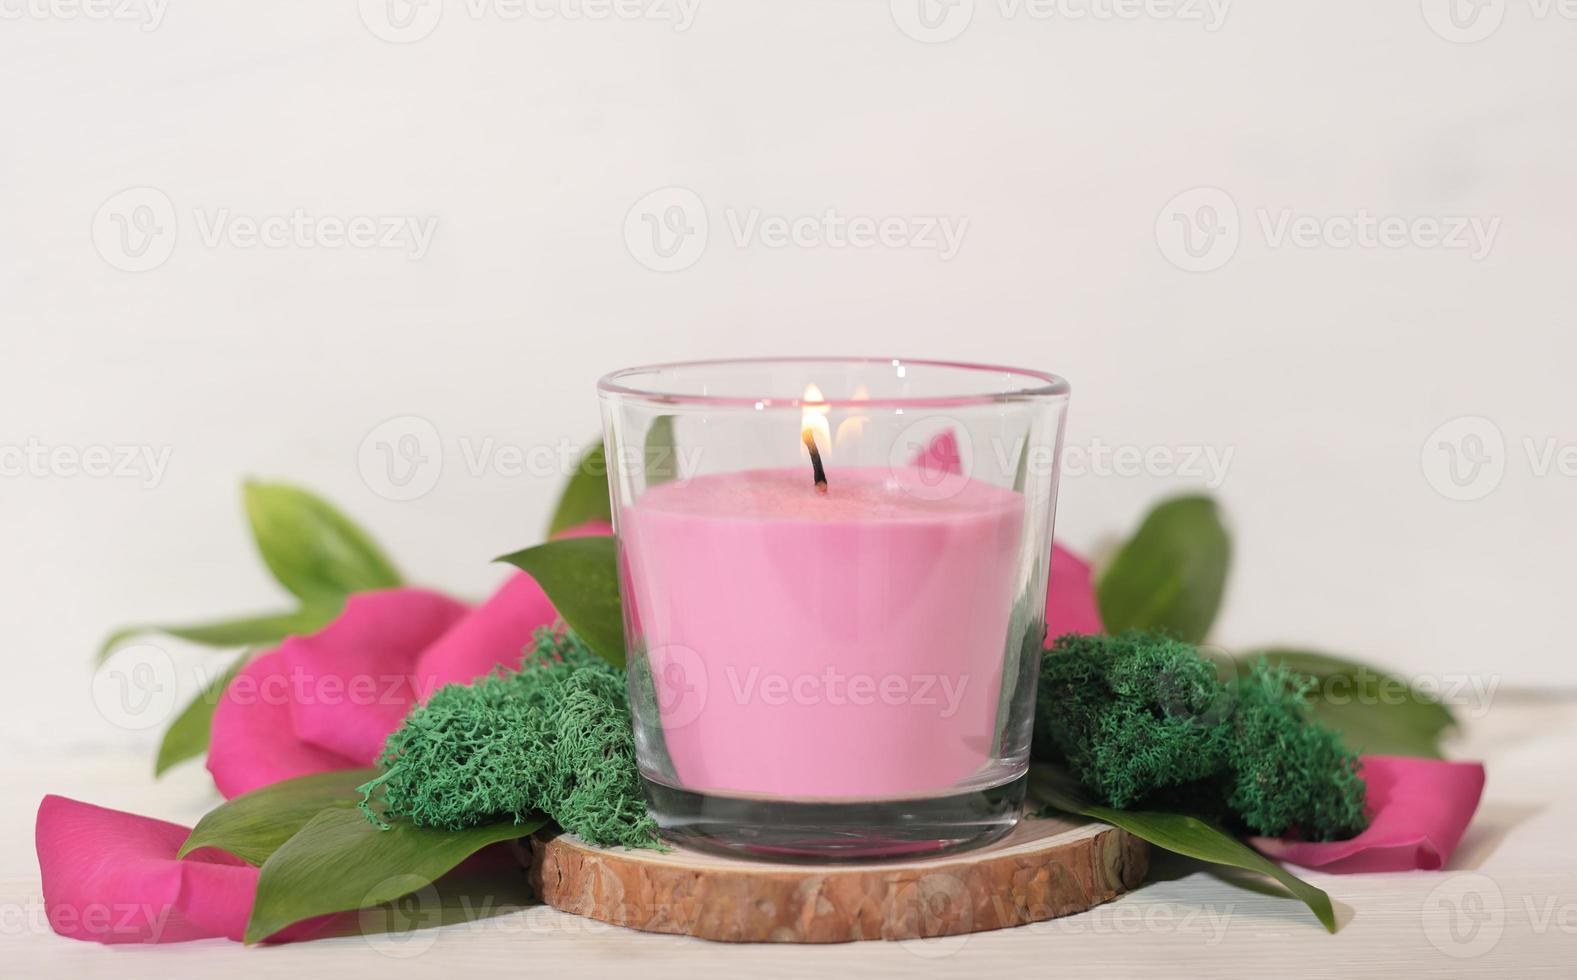 blumige duftende brennende kerze mit grünen blättern, moos und blütenblättern. Raumdüfte, gemütliches Wohnambiente, romantische Dekoration für den Valentinstag. foto